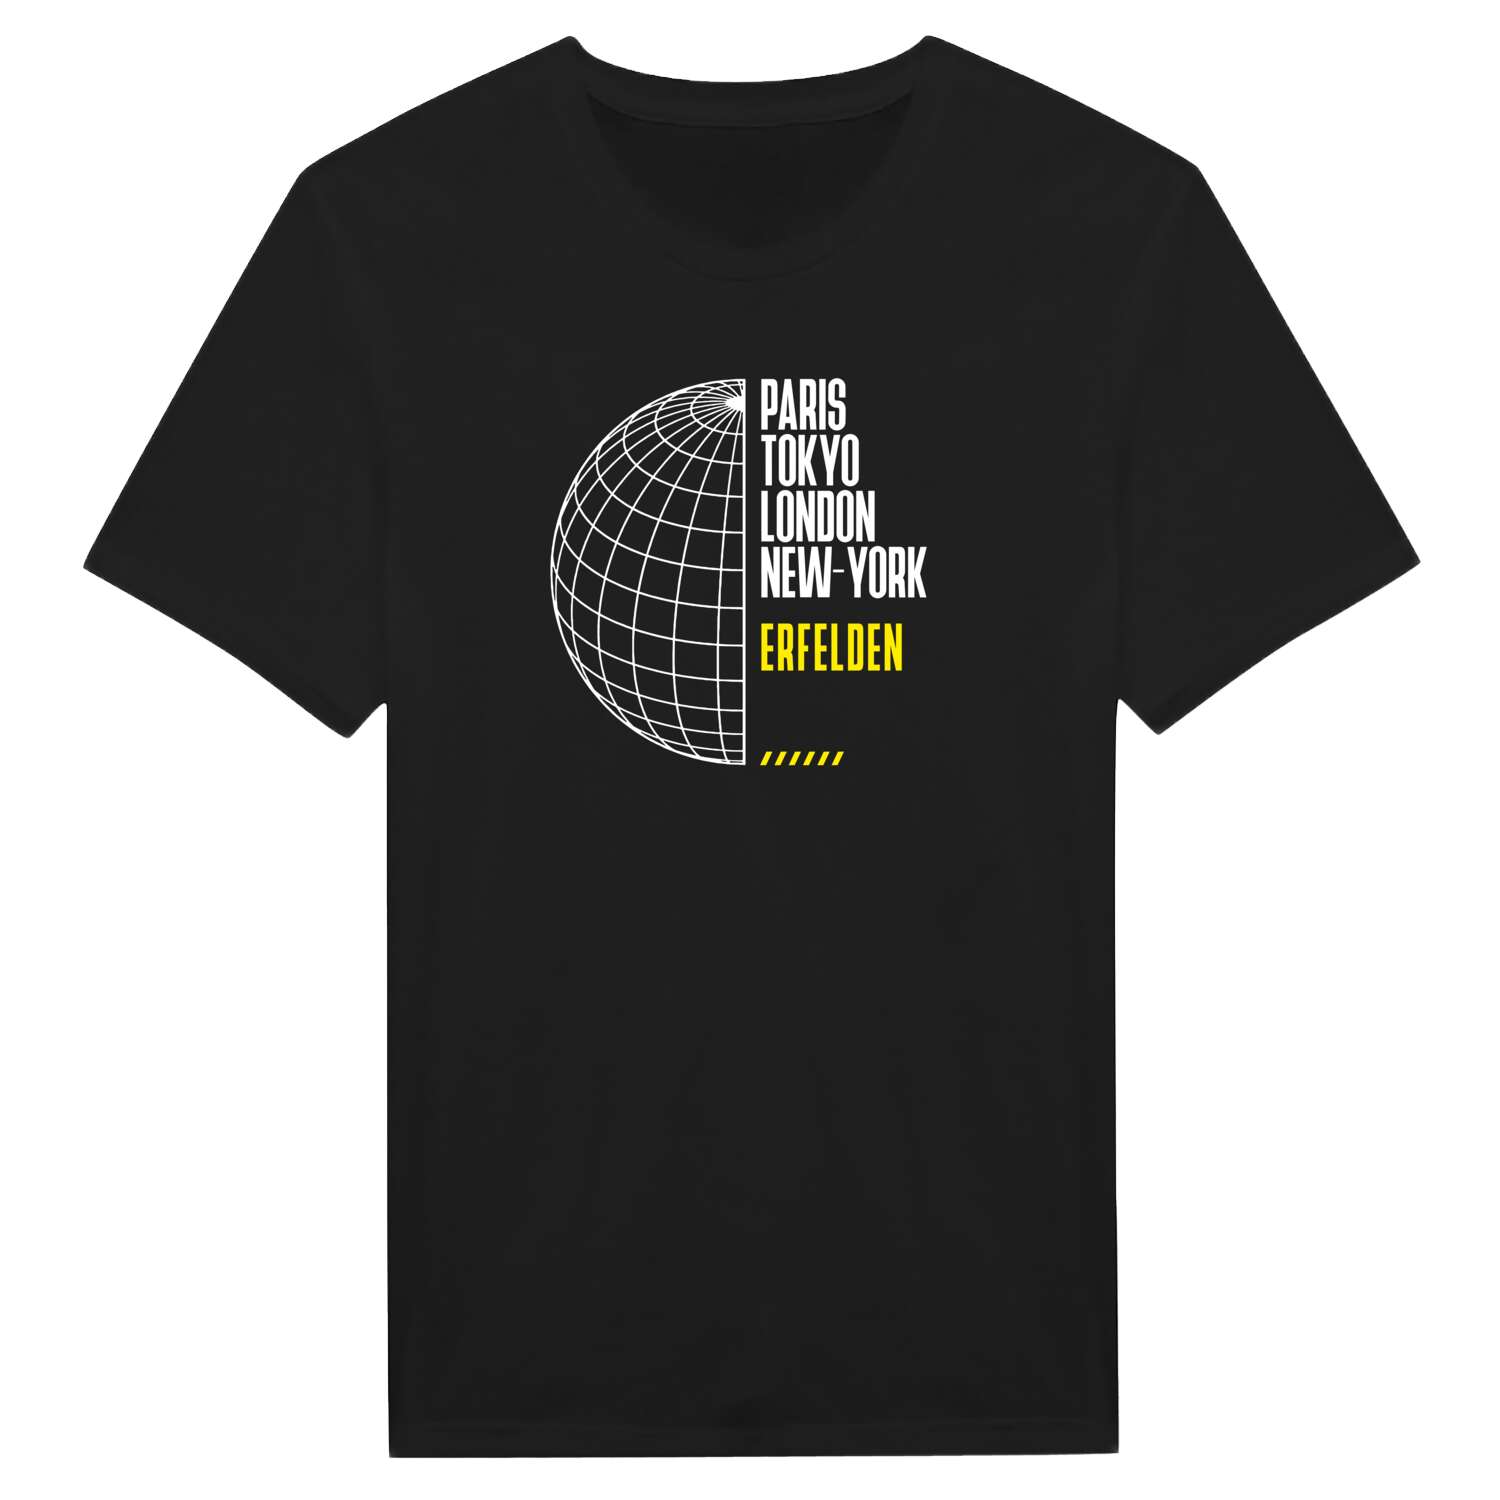 Erfelden T-Shirt »Paris Tokyo London«